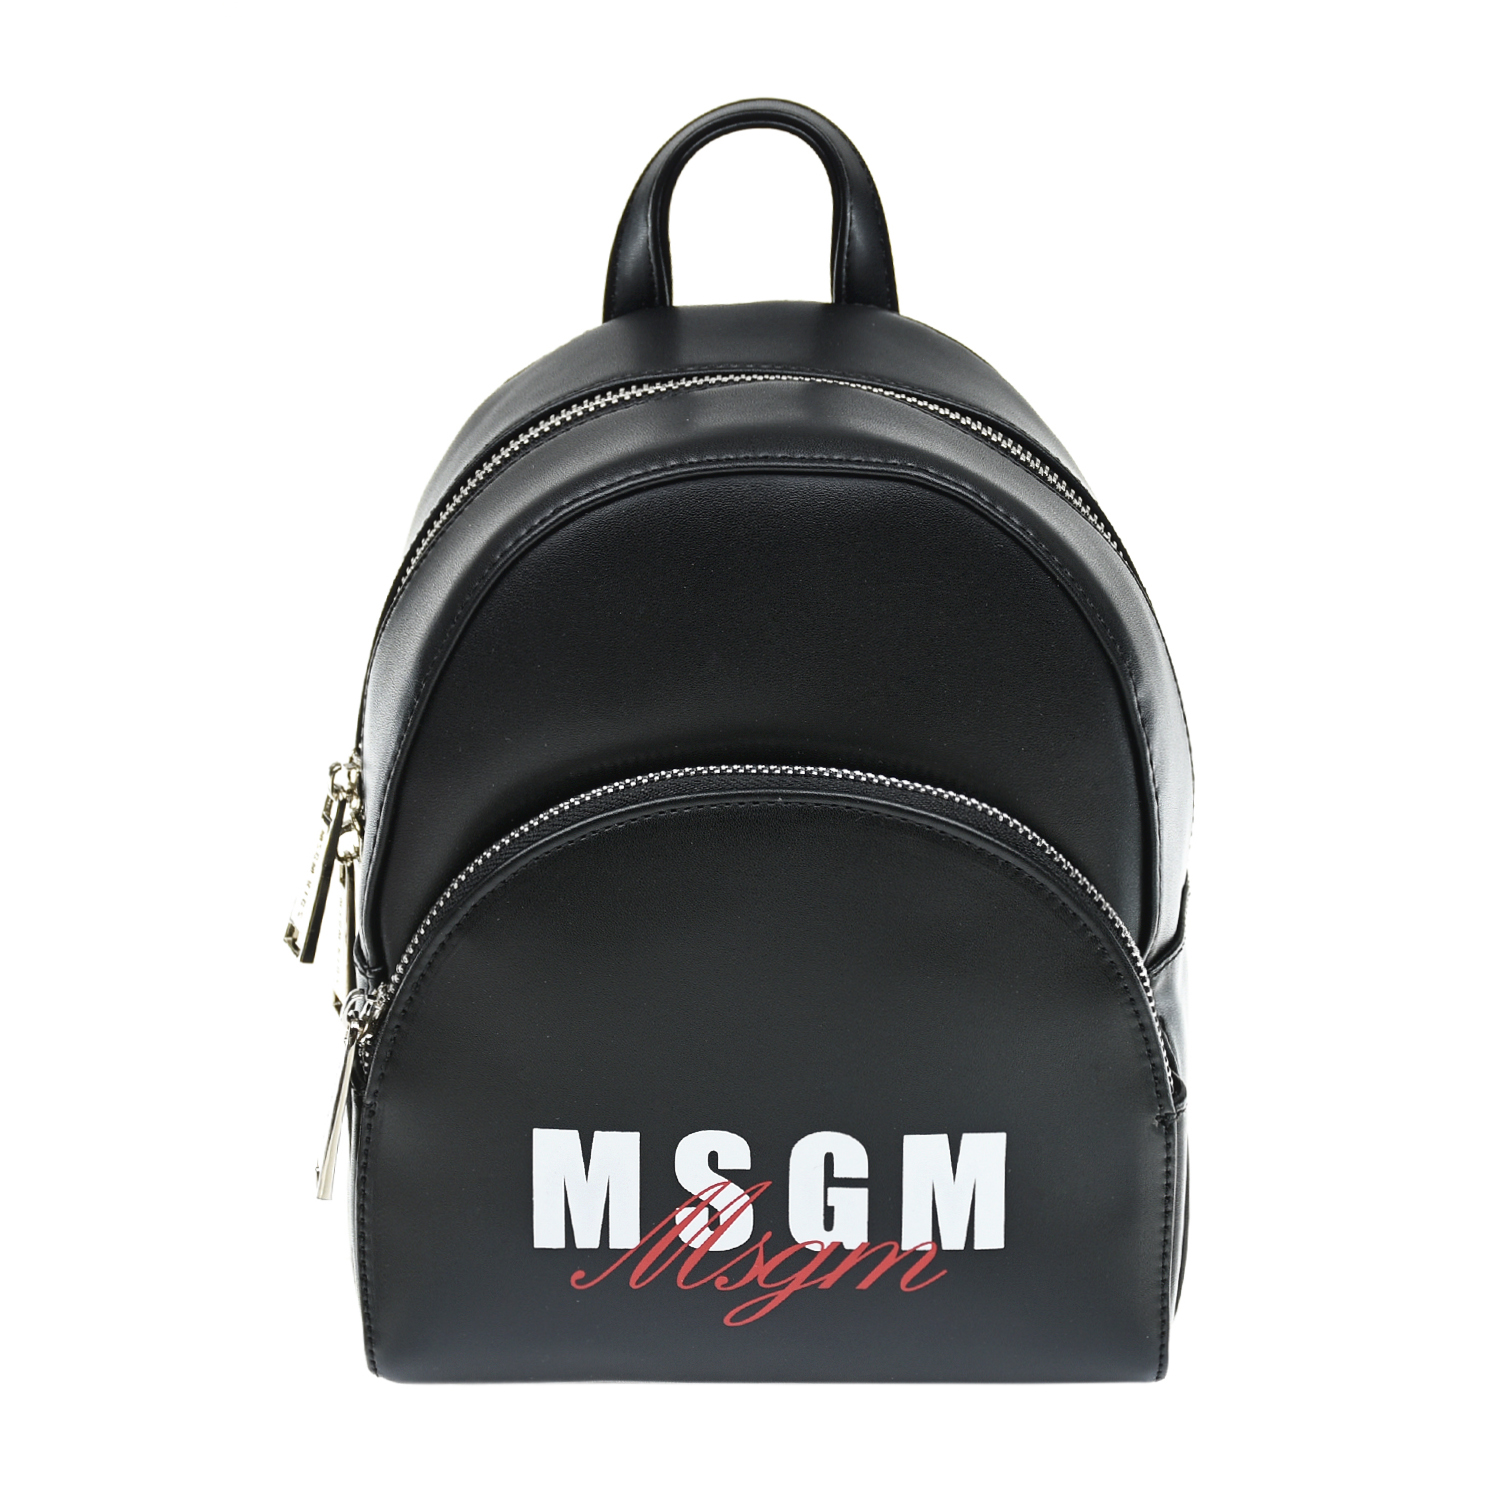 Черный рюкзак с белым логотипом, 21x17x10 см MSGM детский, размер unica